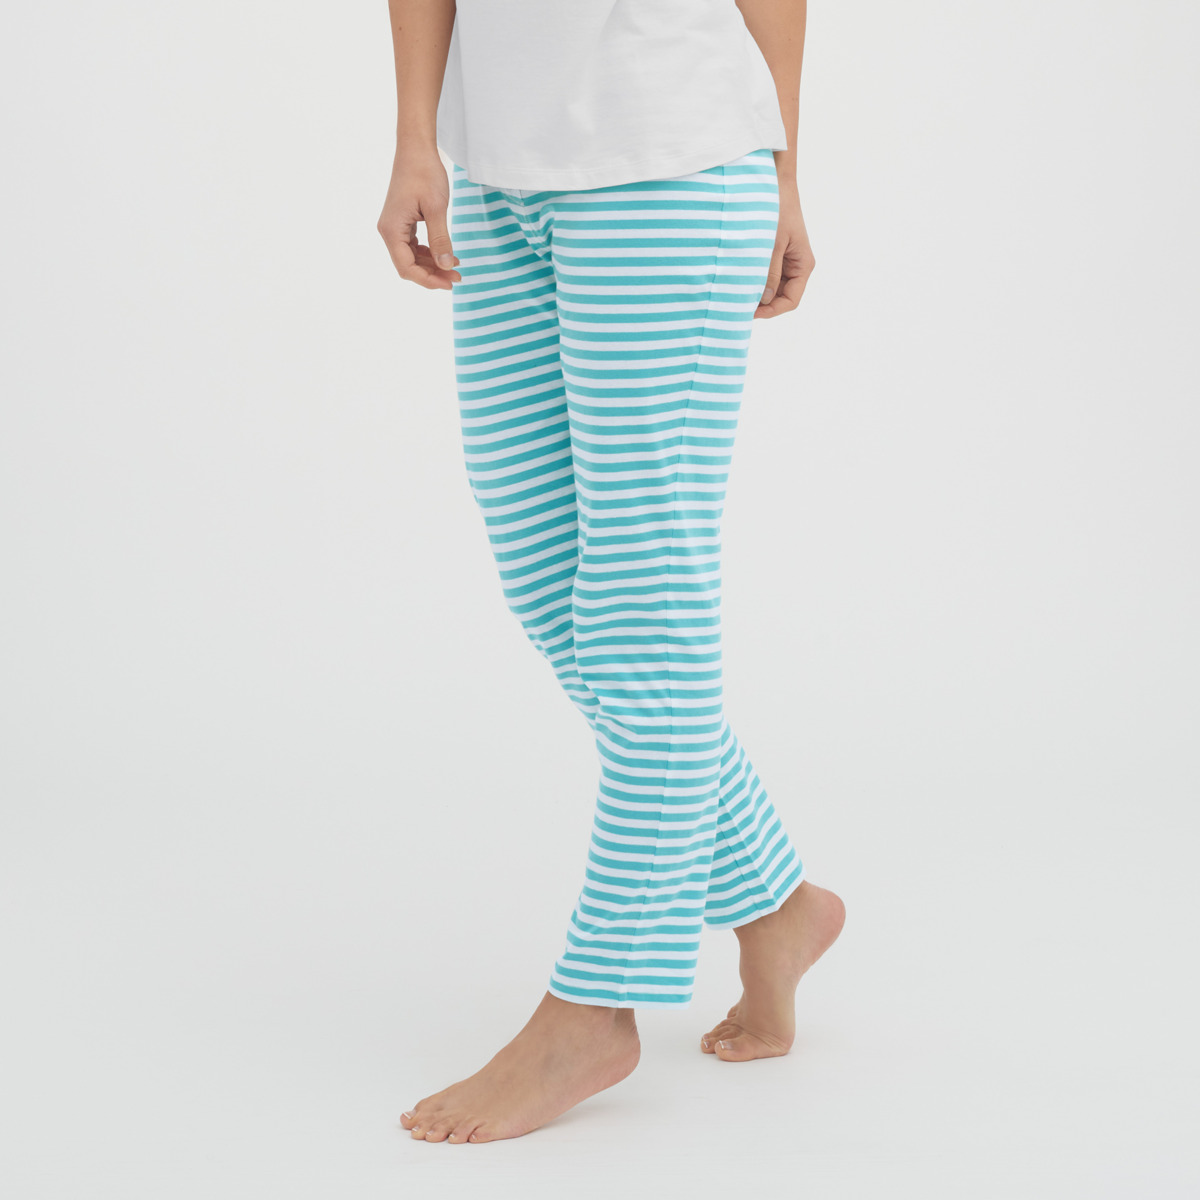 Striped Women Sleep trousers